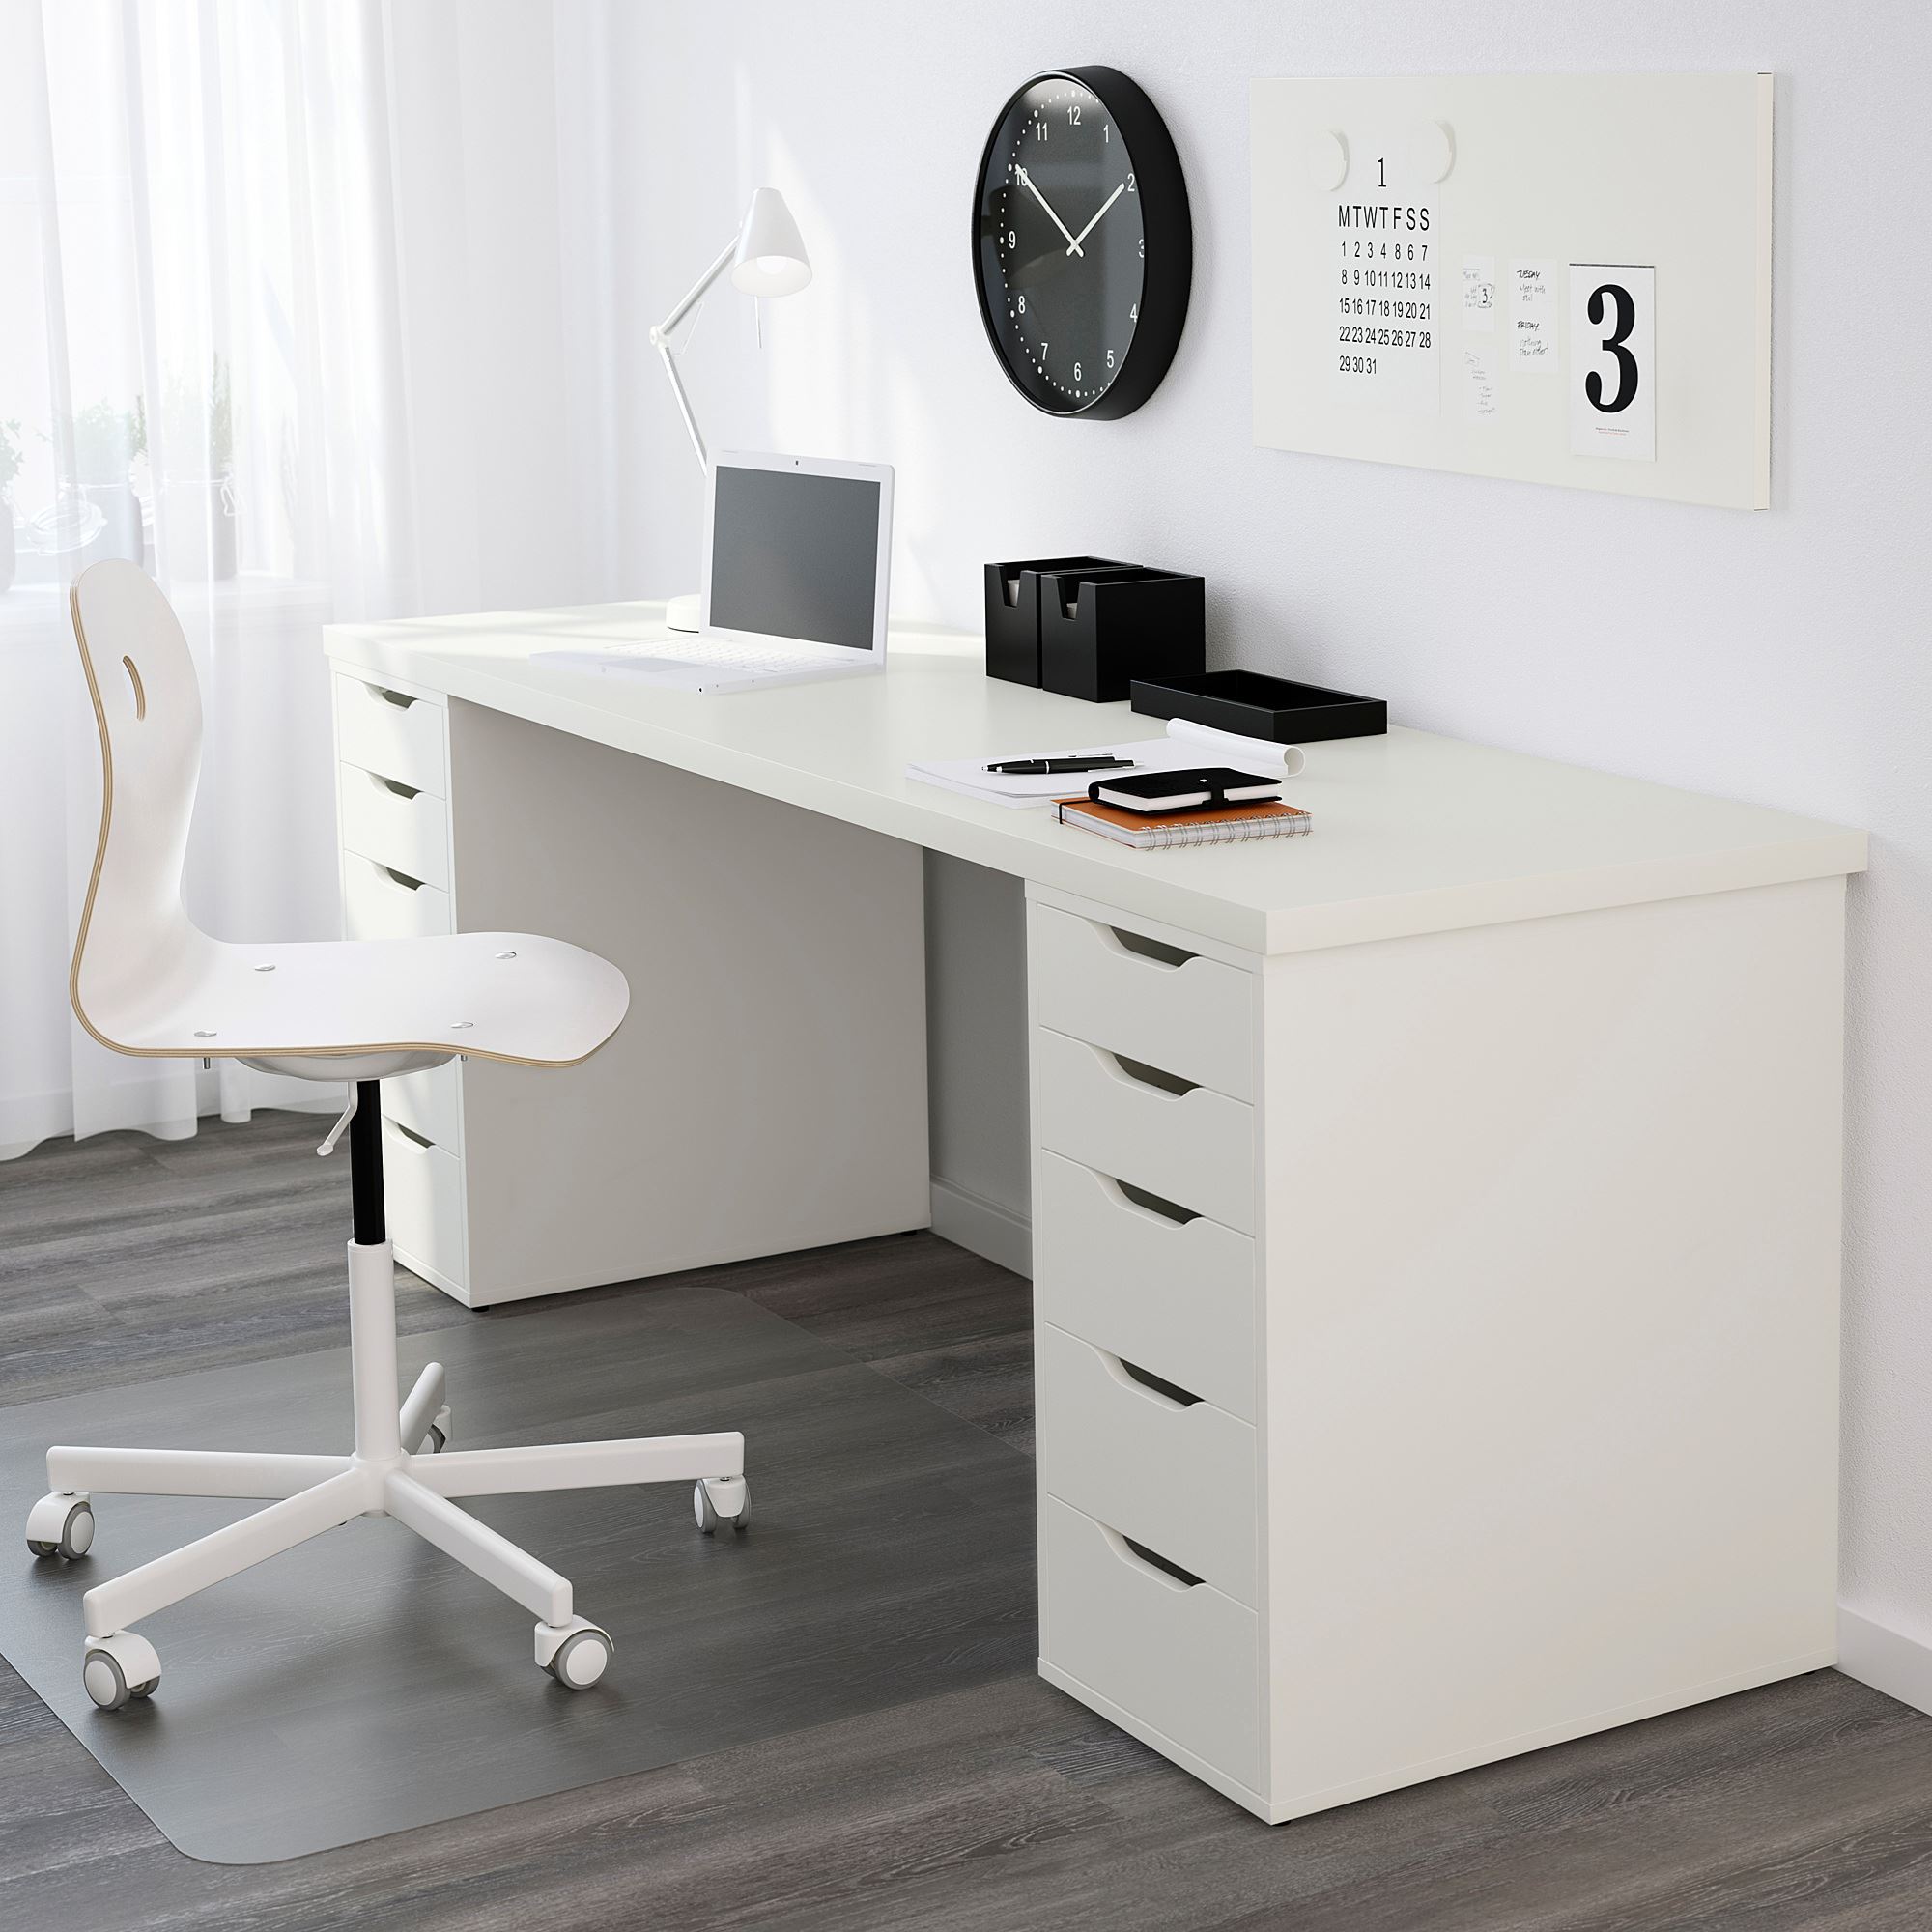 Wooden Best Home Office Desk Ikea 